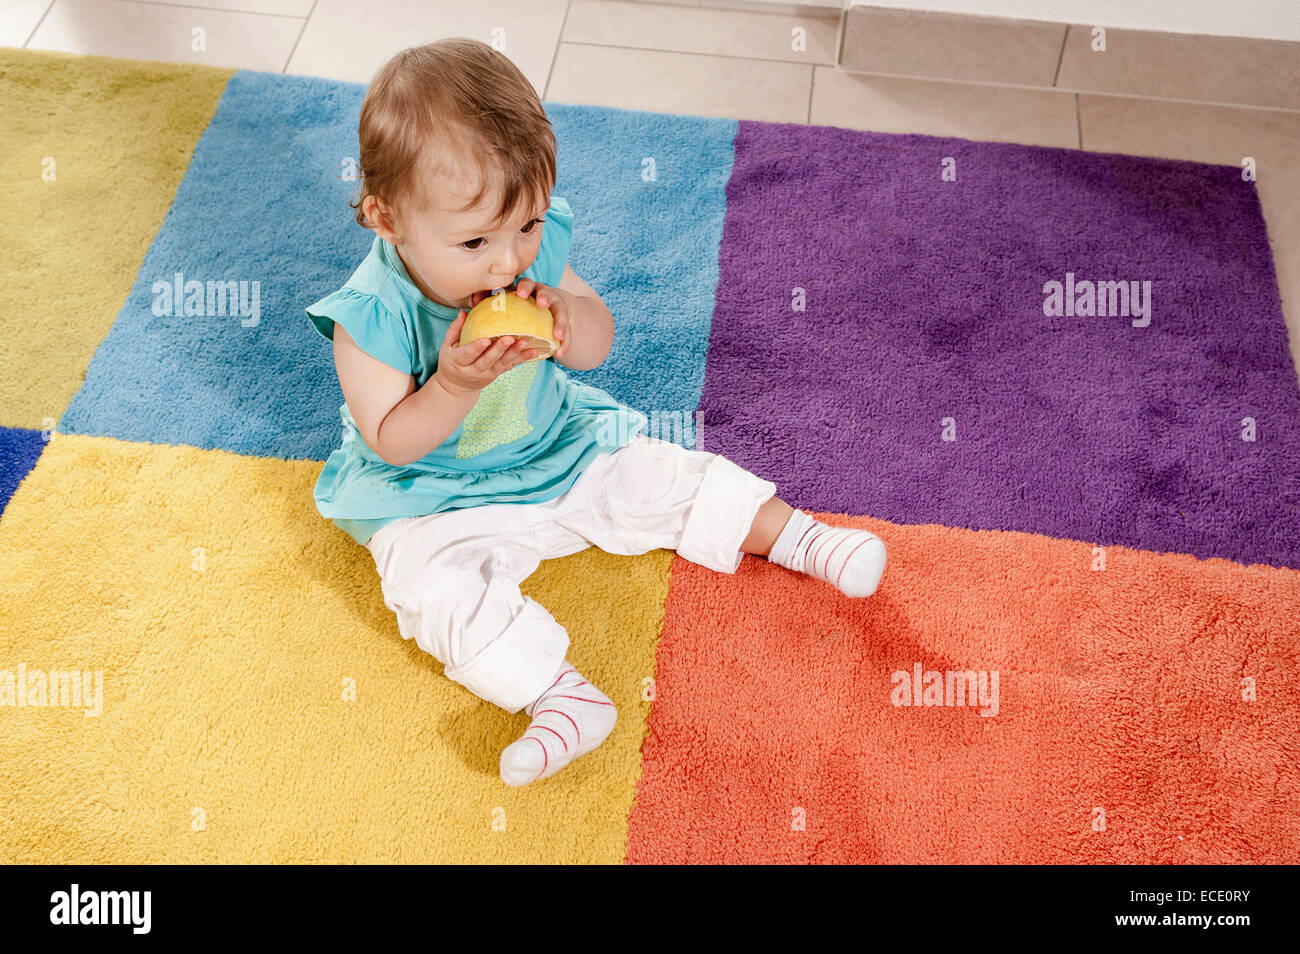 Baby girl 1 year old eating orange carpet Stock Photo